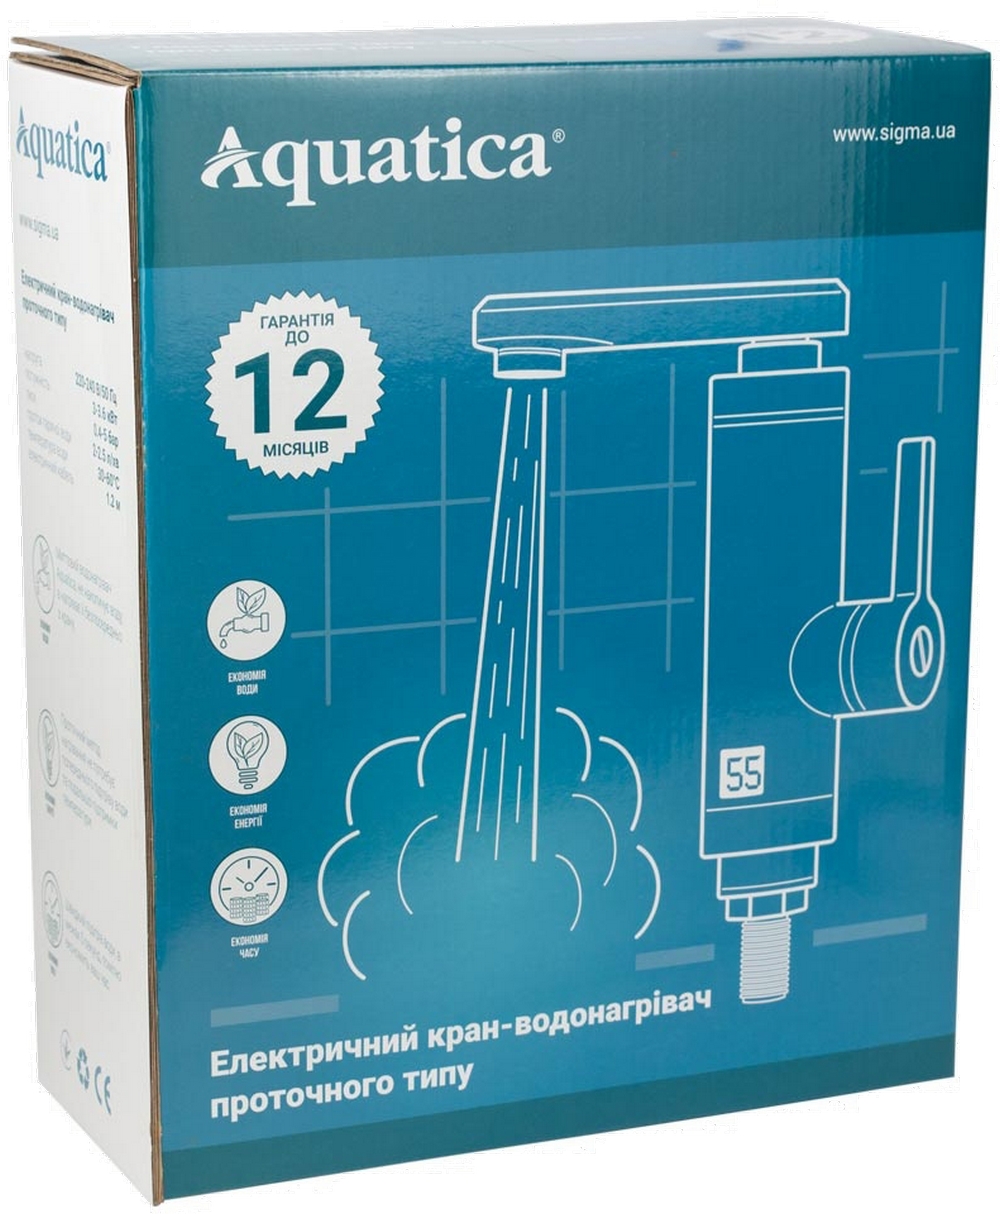 Проточный водонагреватель Aquatica LZ-5A211W цена 1131.00 грн - фотография 2